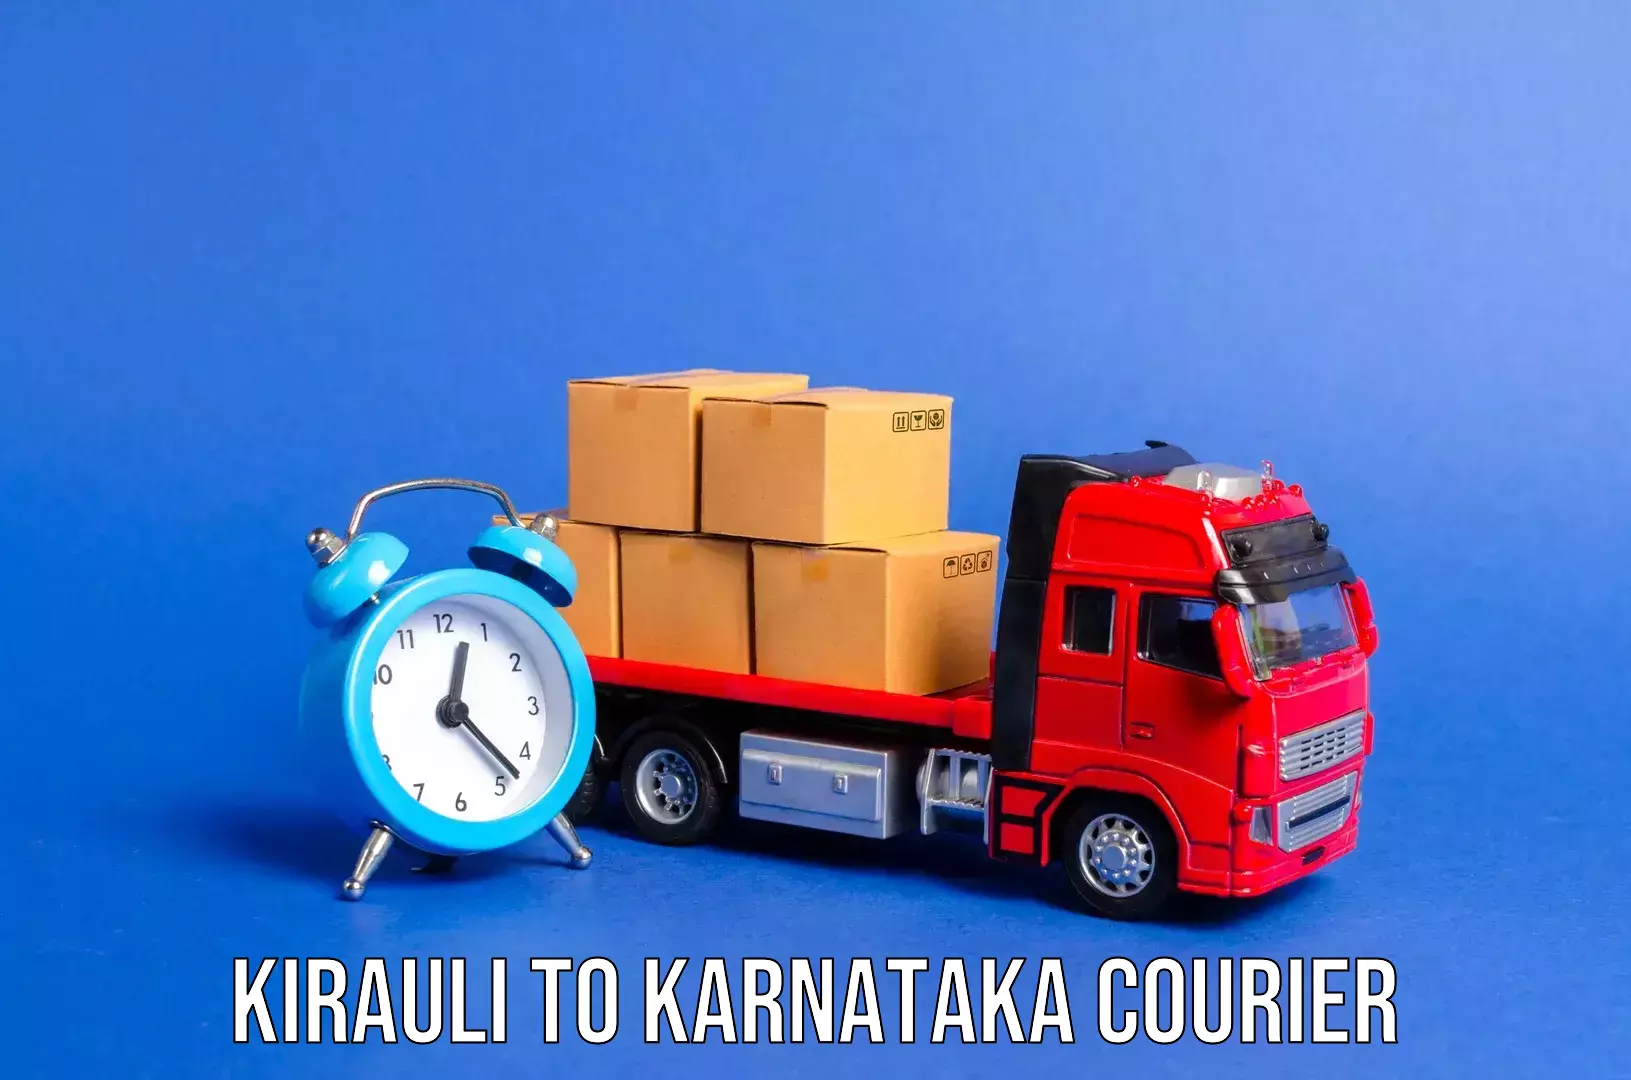 Professional baggage transport Kirauli to Karnataka